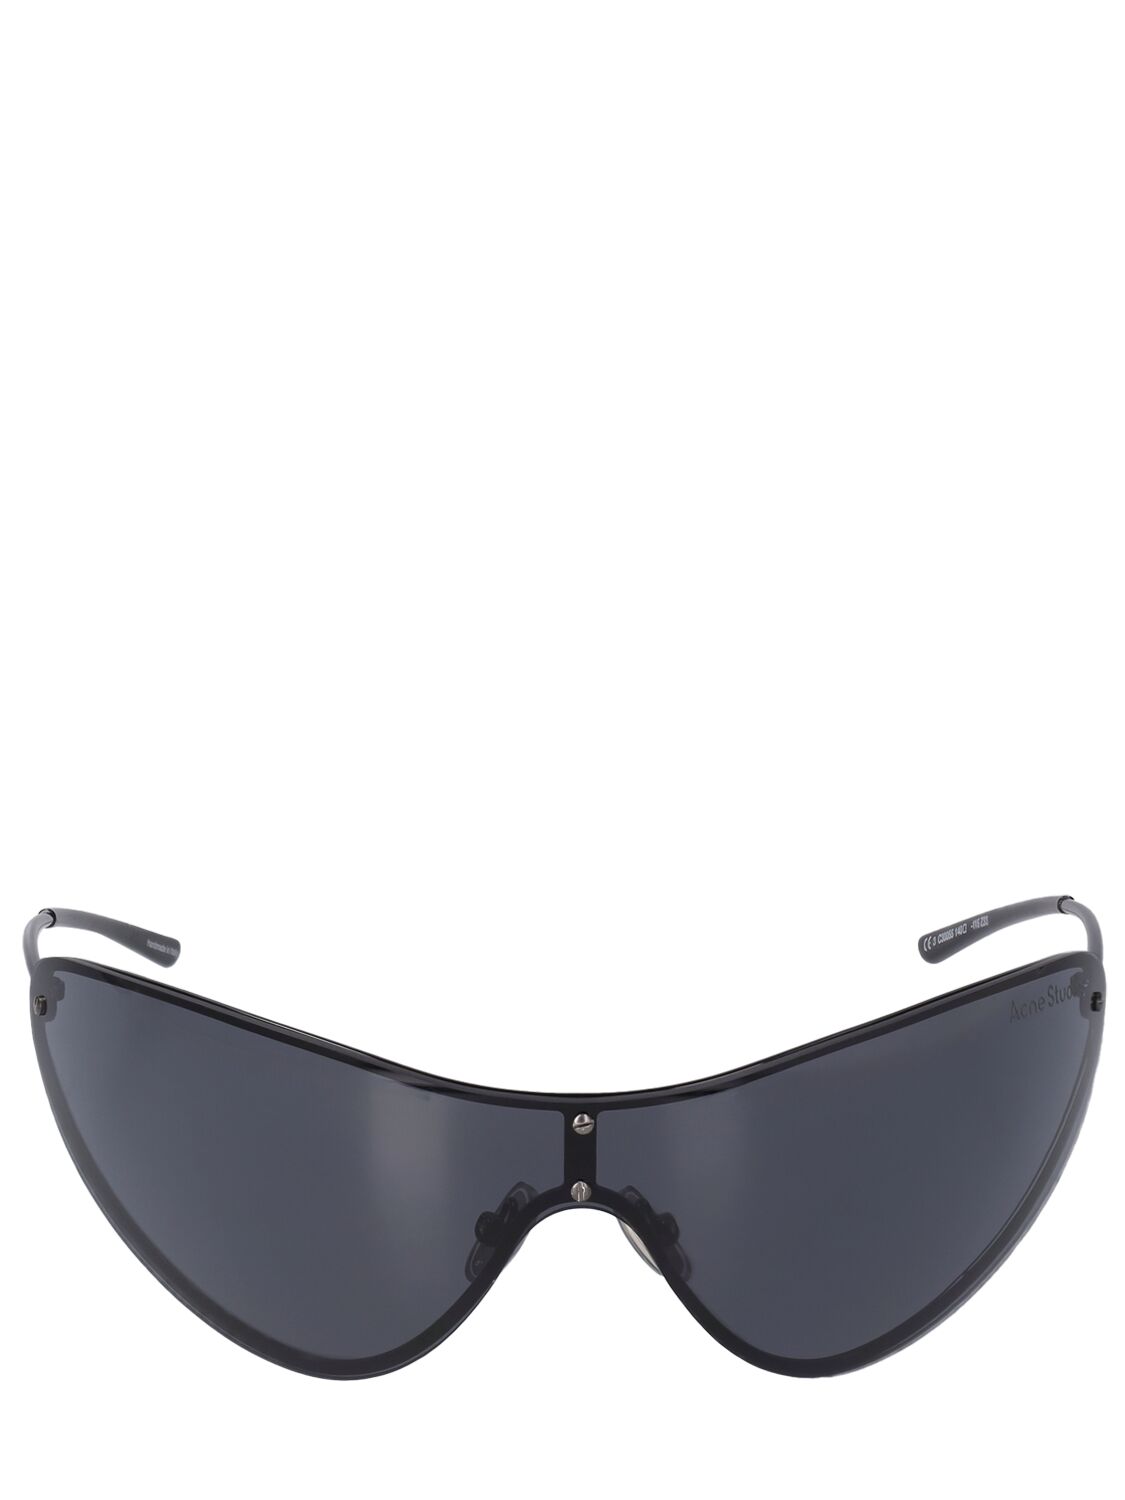 Acne Studios Antus Mask Metal Sunglasses In Black